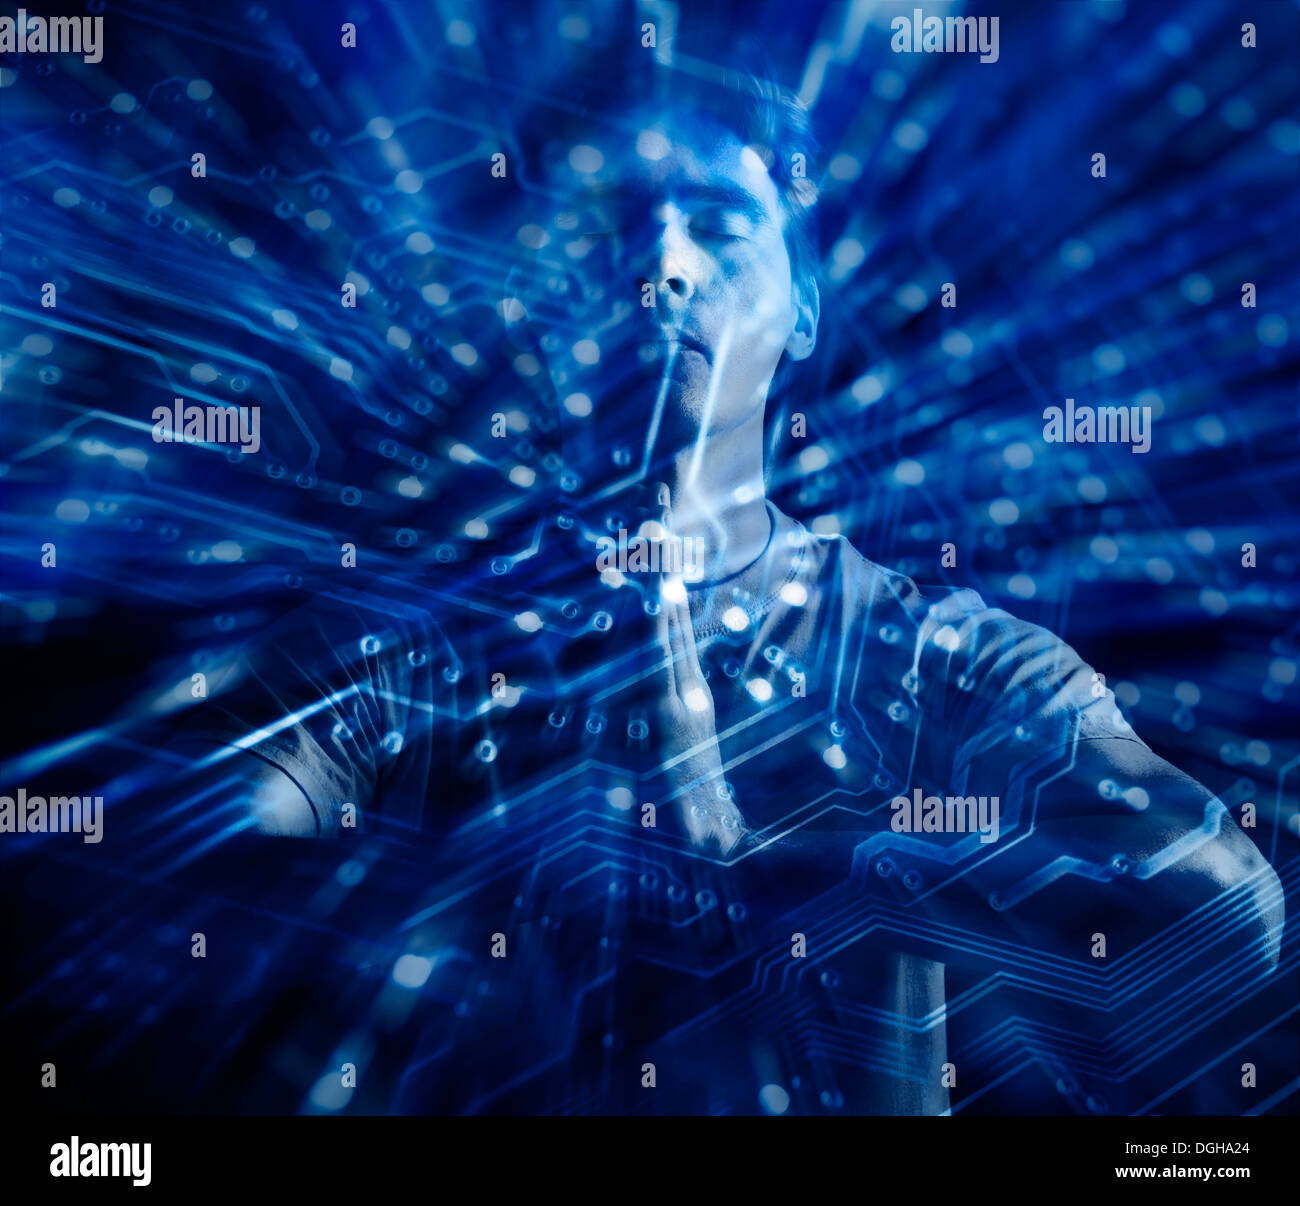 Führerschein und Fingerabdrücke auf MaximImages.com - das konzeptionelle Porträt eines Mannes, der meditiert, mit zusammengefassten Händen, umgeben von digitalen Schaltkreisen, Techno Stockfoto